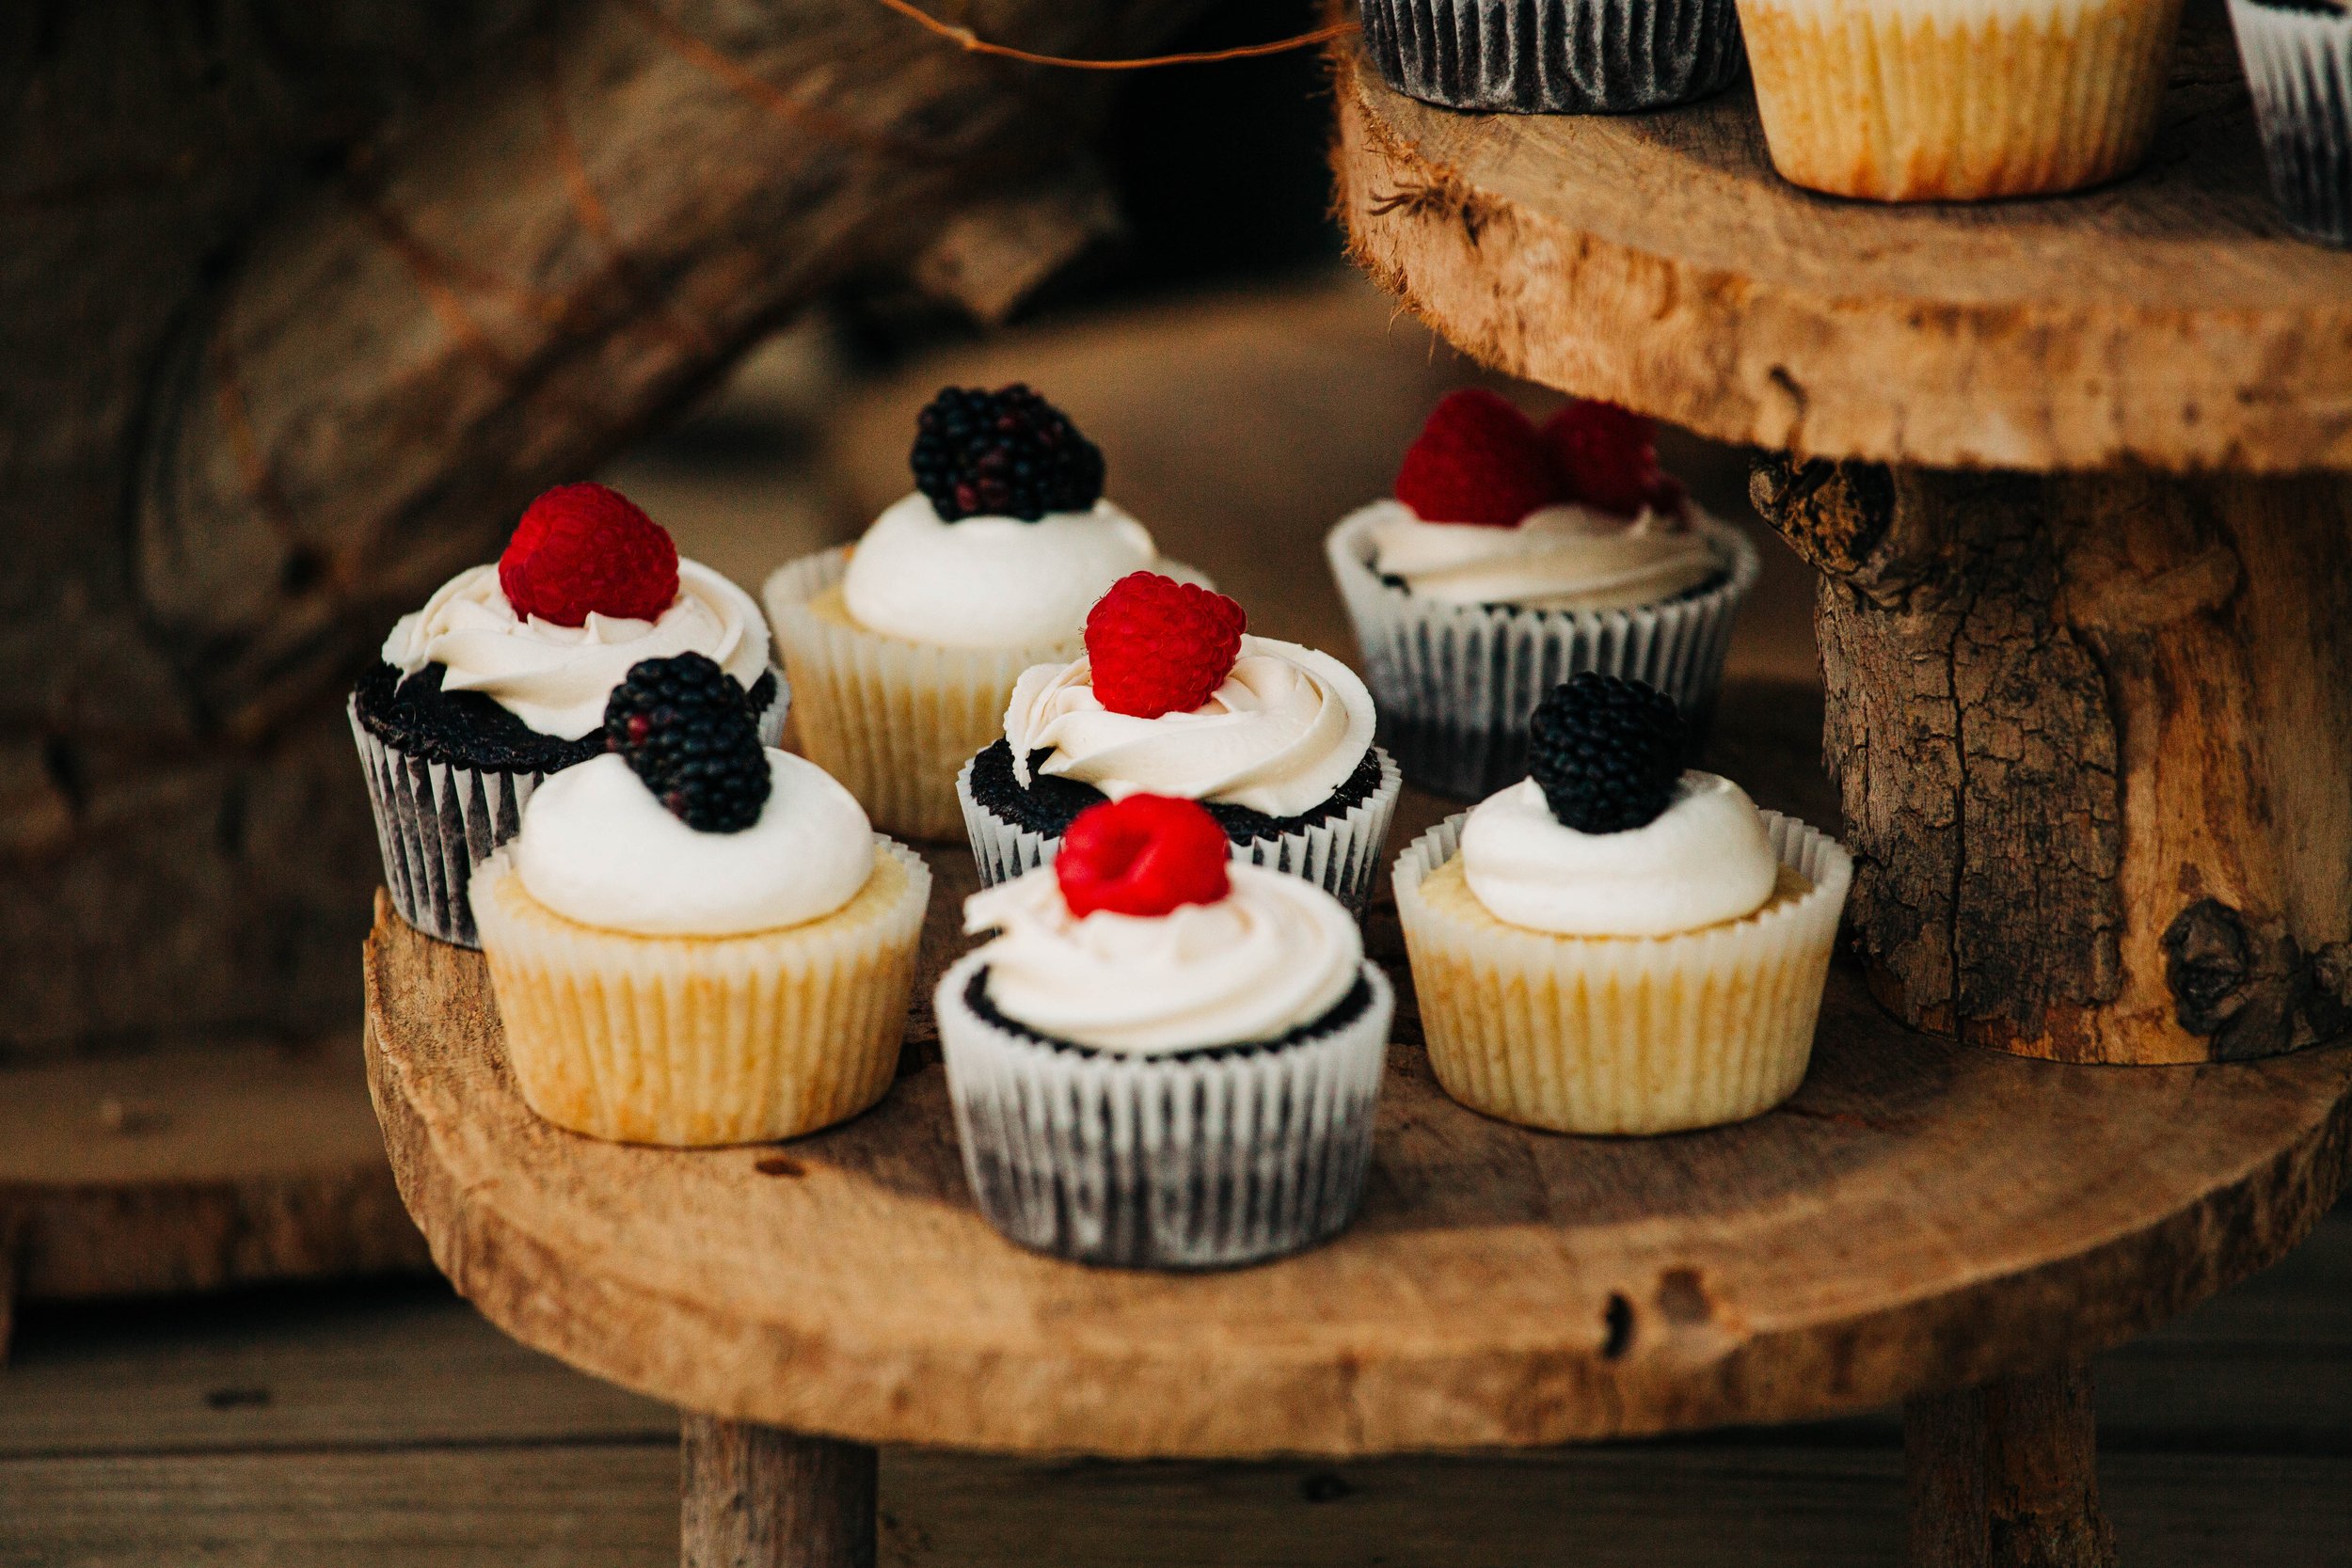 wedding cupcakes with raspberries and blackberries.jpg